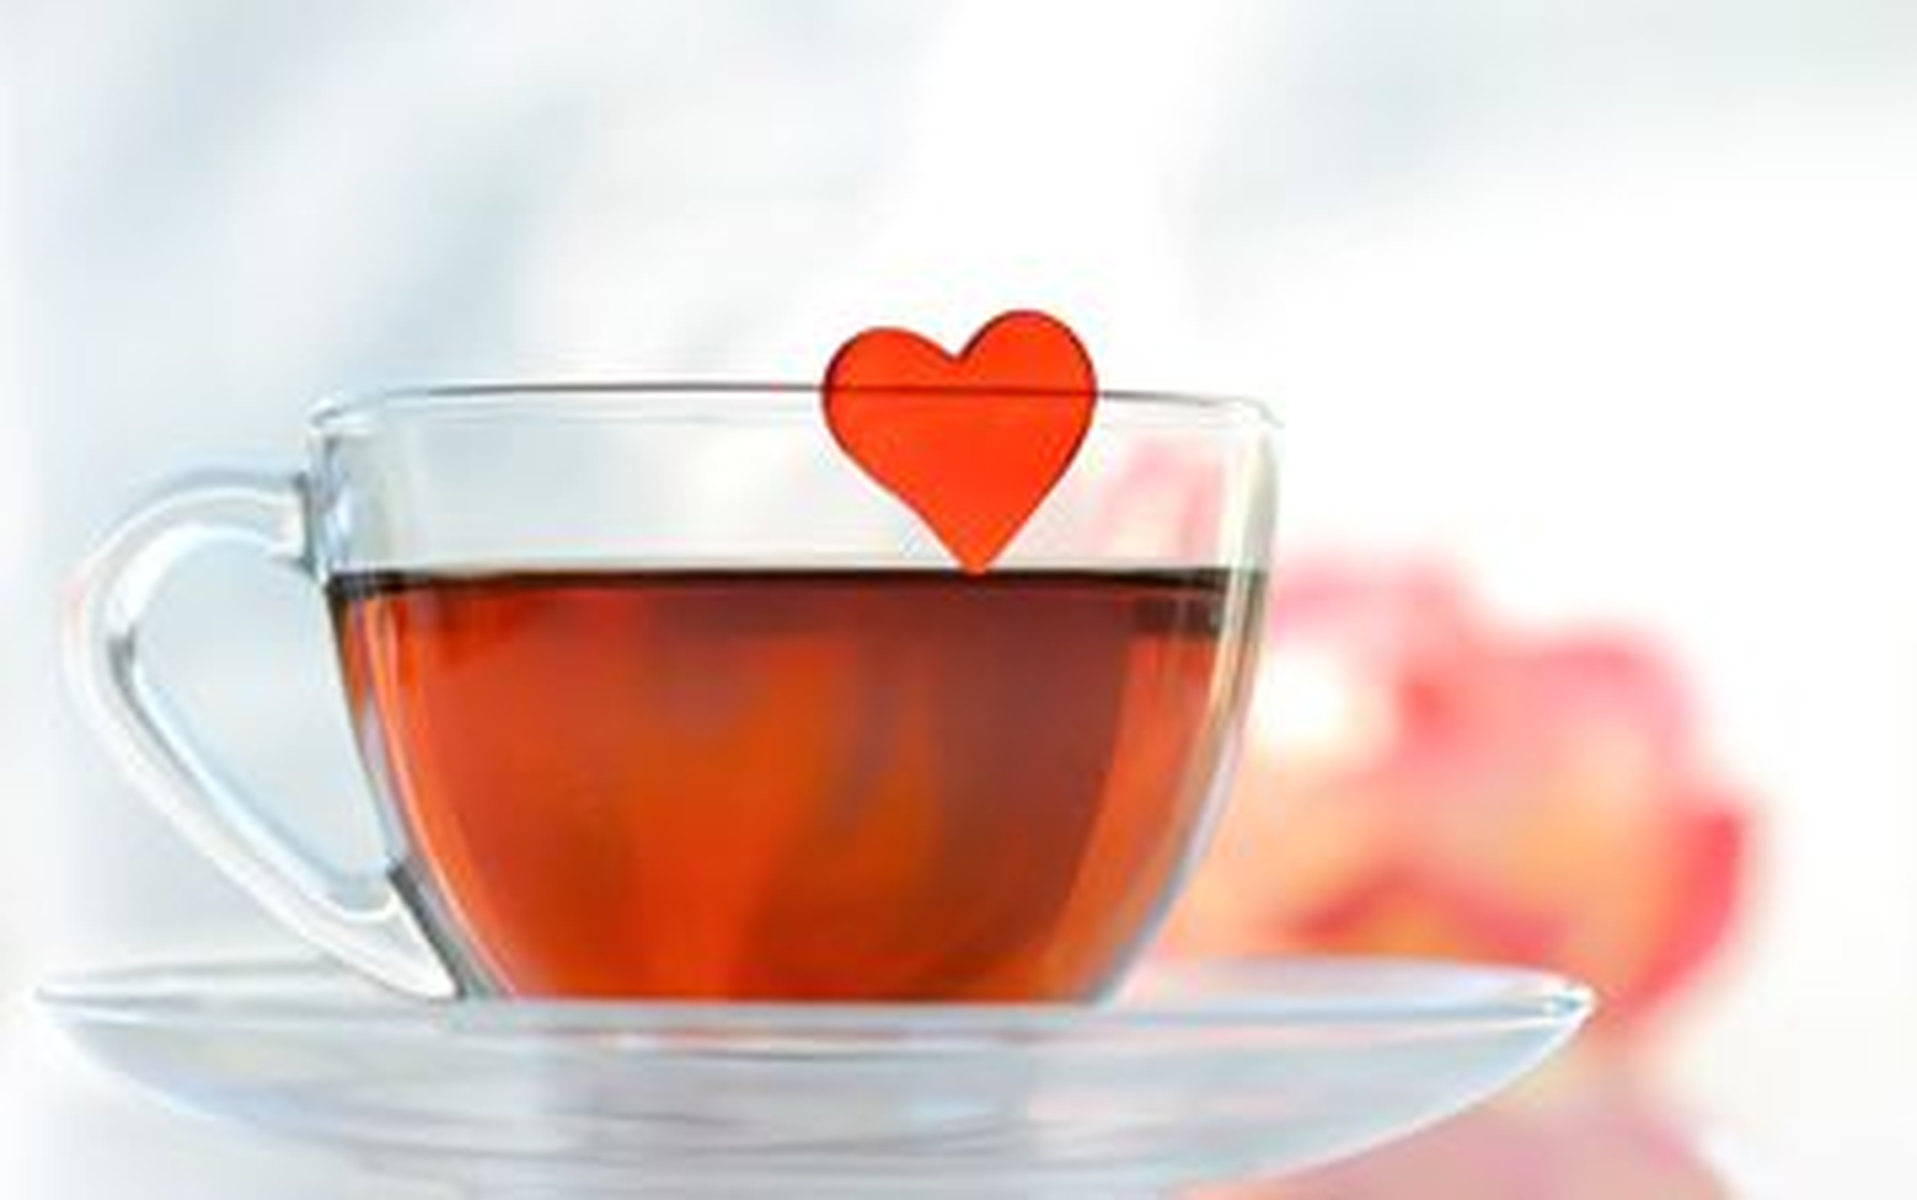 

Картинка чай с валентинкой

